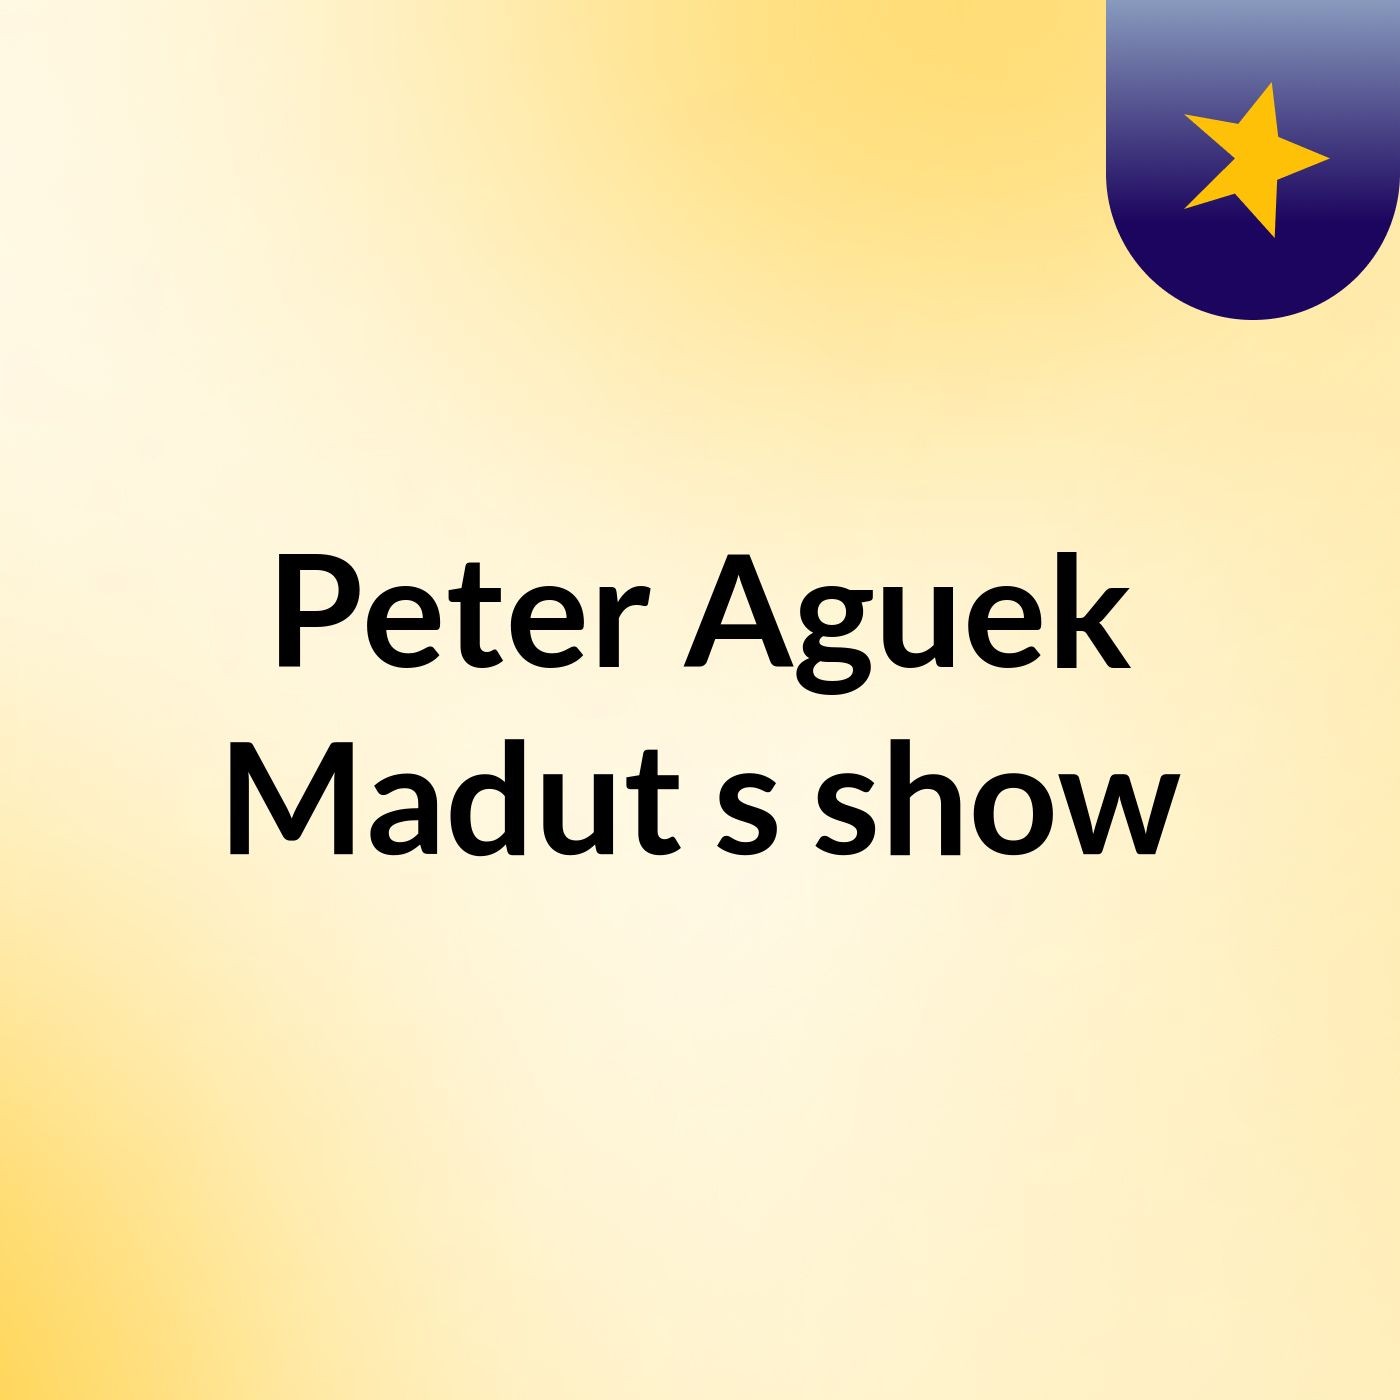 Episode 3 - Peter Aguek Madut's show